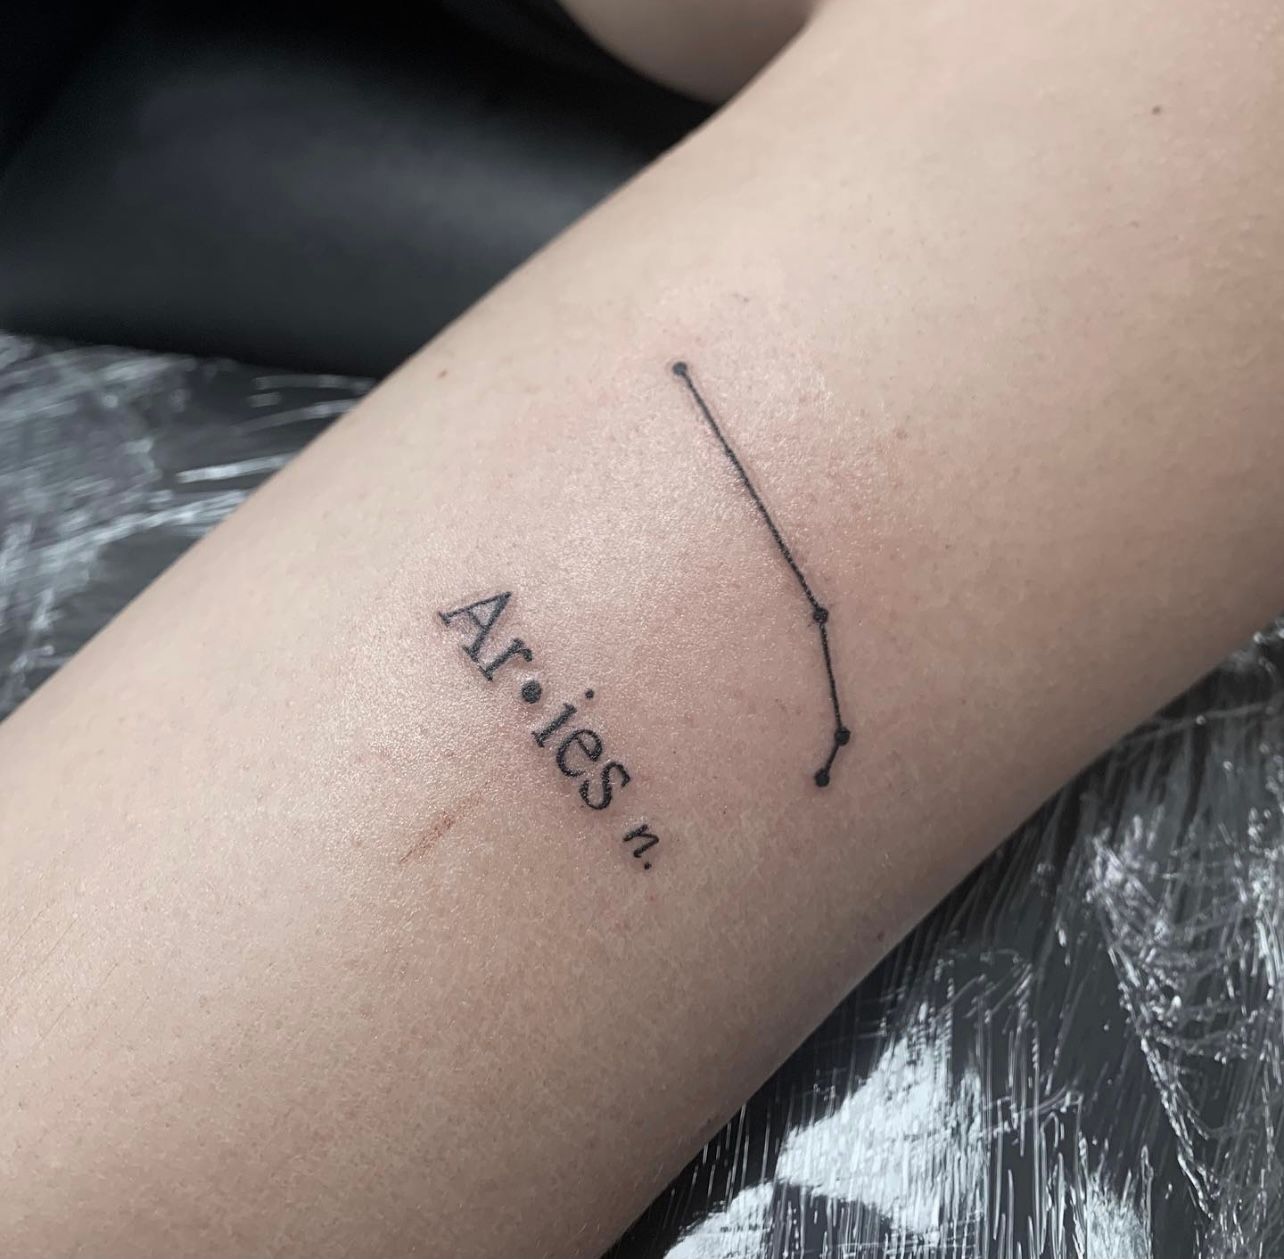 Aries tattoo | Capricorn tattoo, Aries tattoo, Tattoos